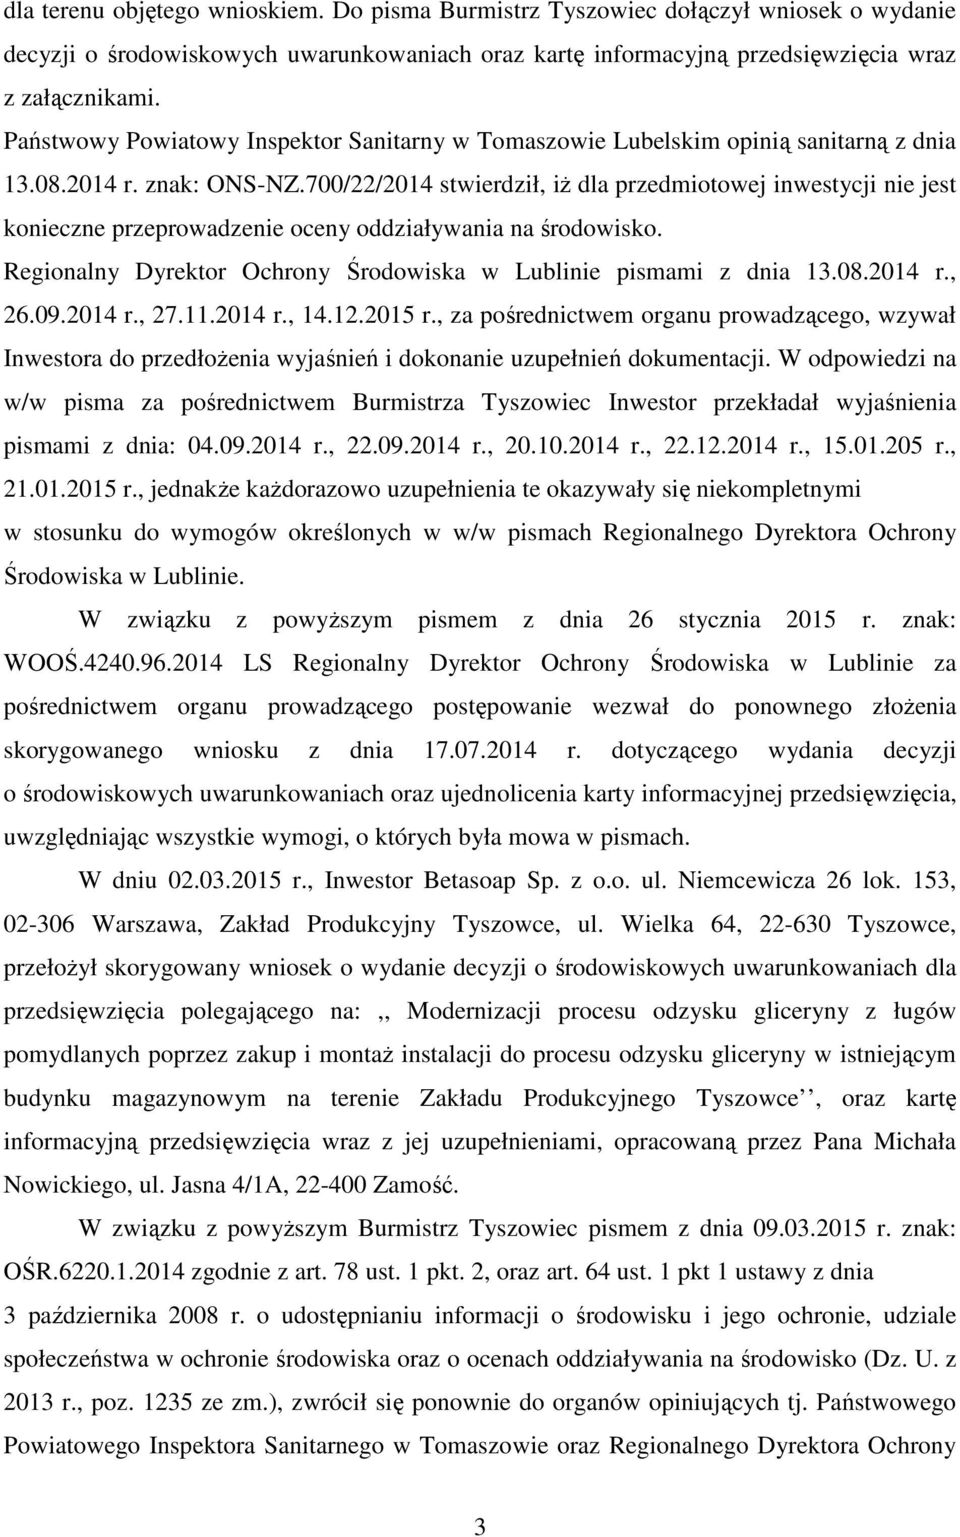 700/22/2014 stwierdził, iŝ dla przedmiotowej inwestycji nie jest konieczne przeprowadzenie oceny oddziaływania na środowisko. Regionalny Dyrektor Ochrony Środowiska w Lublinie pismami z dnia 13.08.